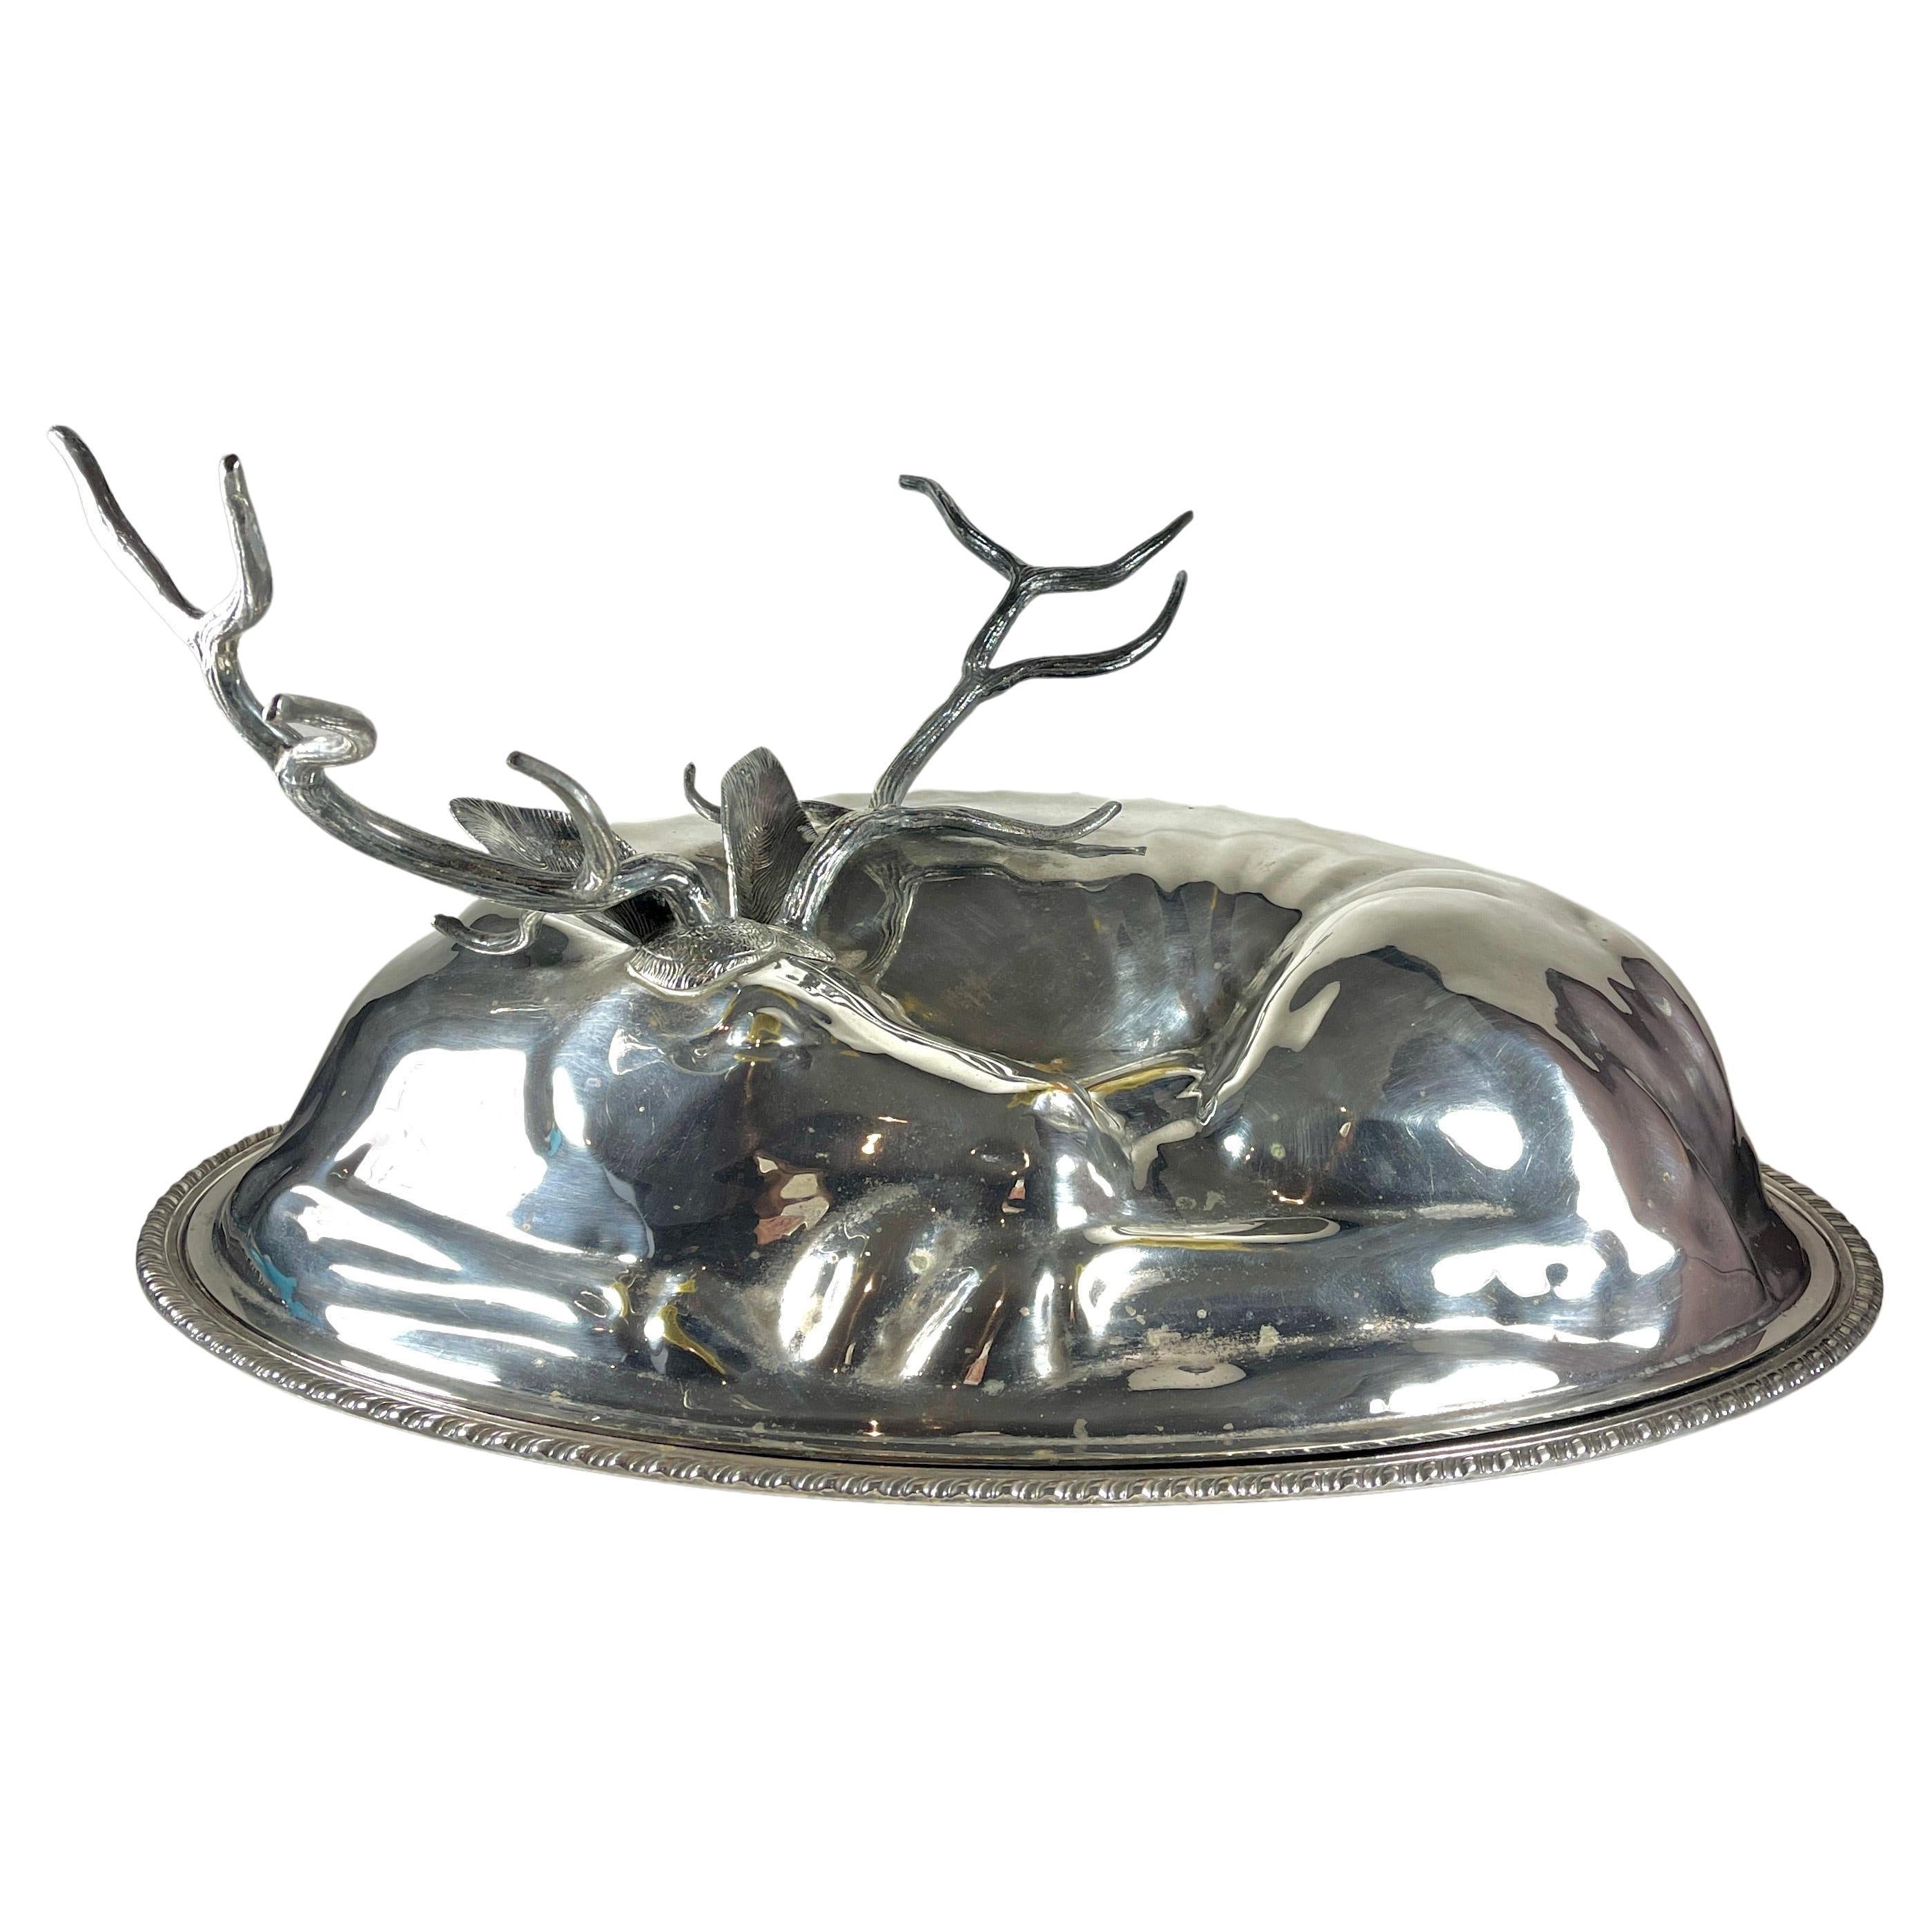 Teghini Firenze Italian Silver Resting Deer Monumental Covered Serving Platter